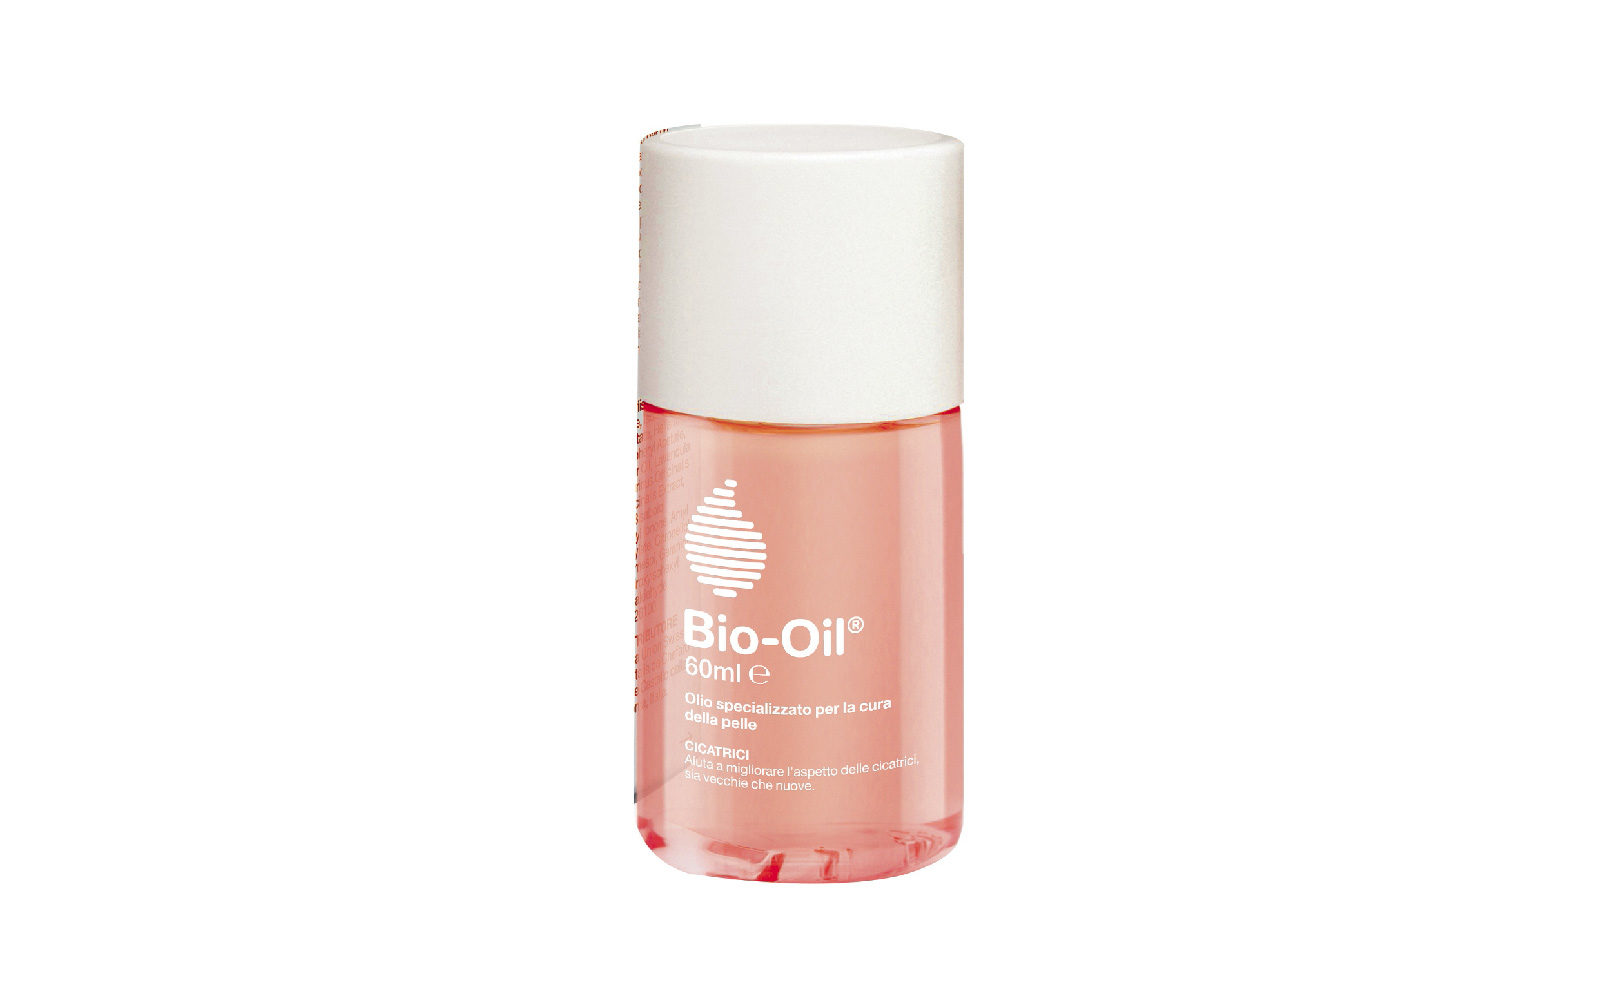 Bio-Oil, in formato tascabile, è ideale per un’idratazione à porter (farmacia, 11,95 euro).